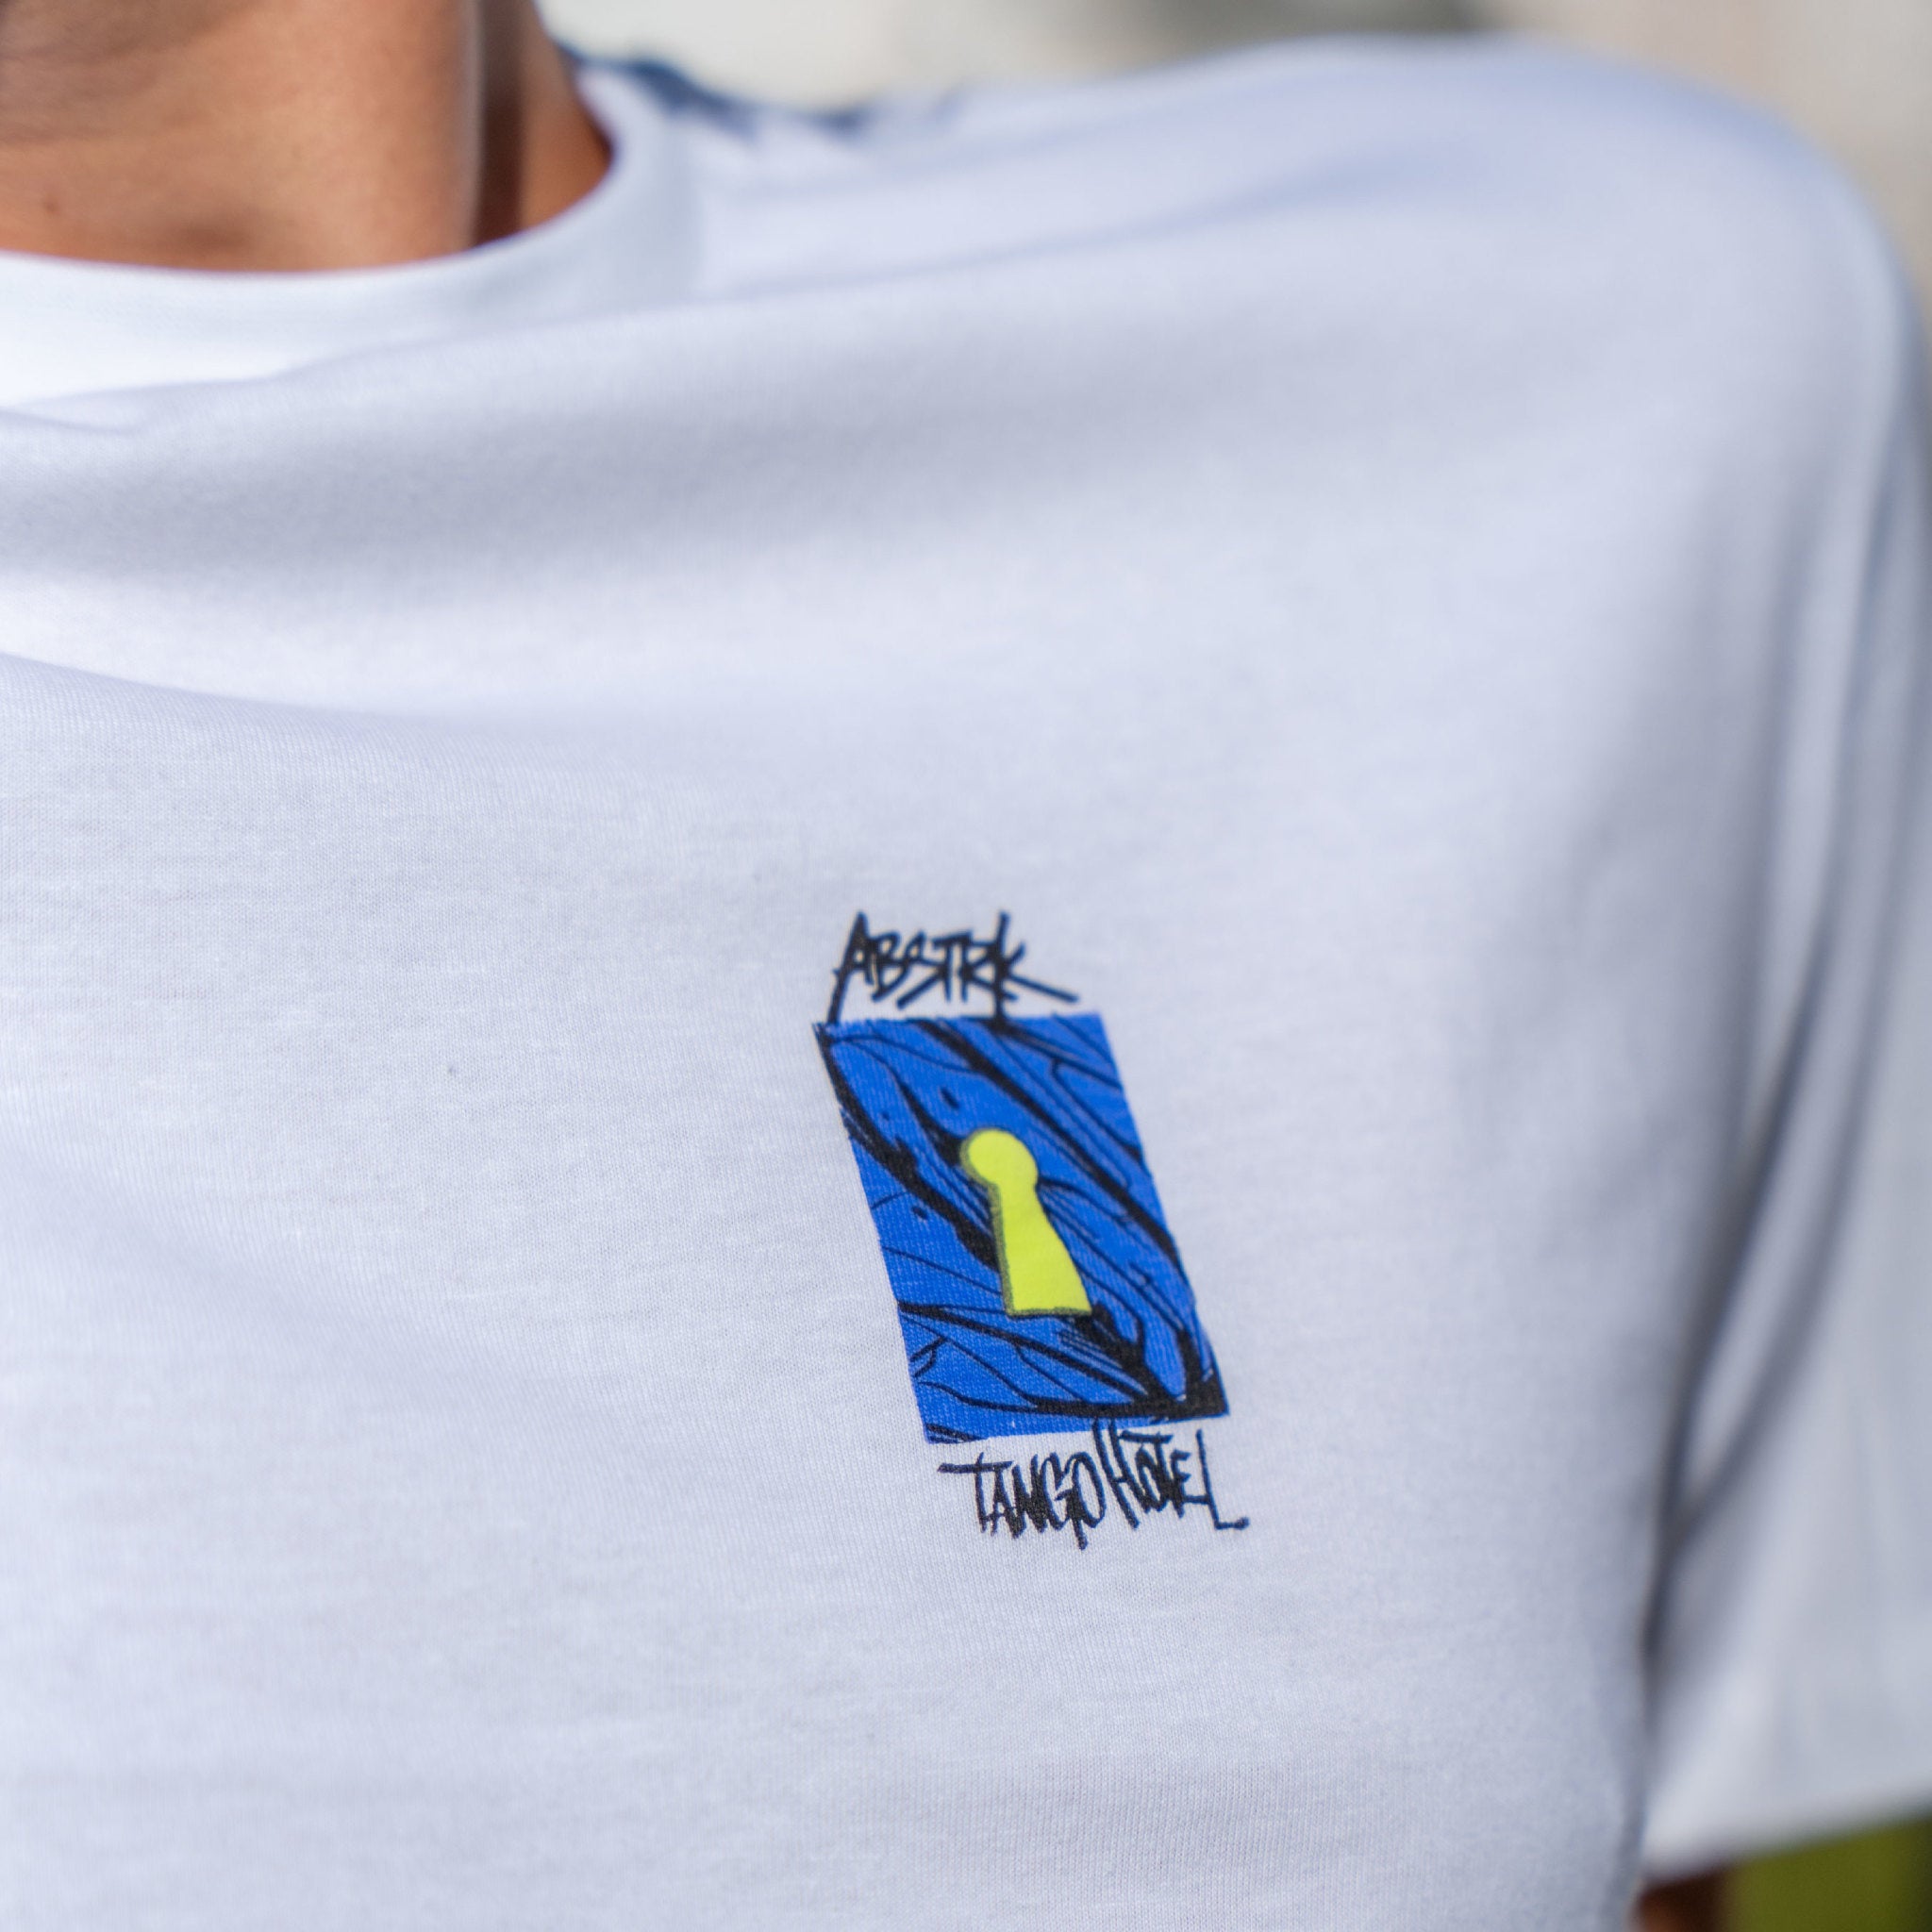 ABSTRK Tango GT Shirt - Wynwood Walls Shop